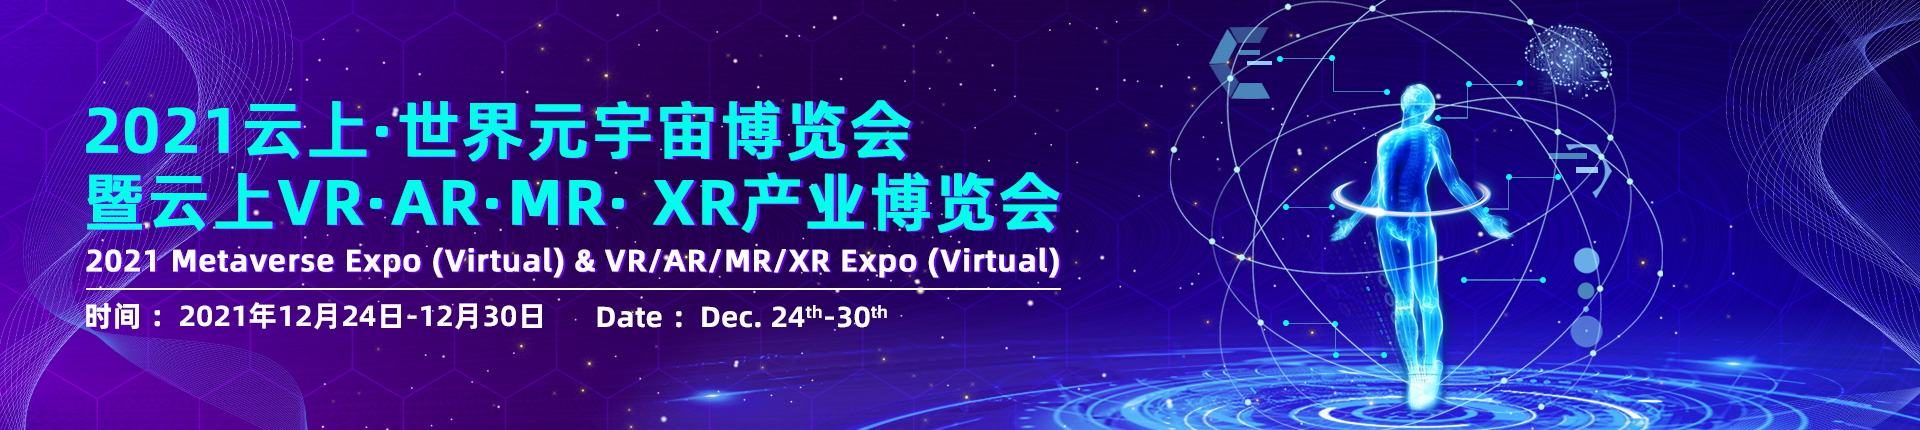 2021云上·世界元宇宙博览会暨VR·AR·MR·XR产业博览会